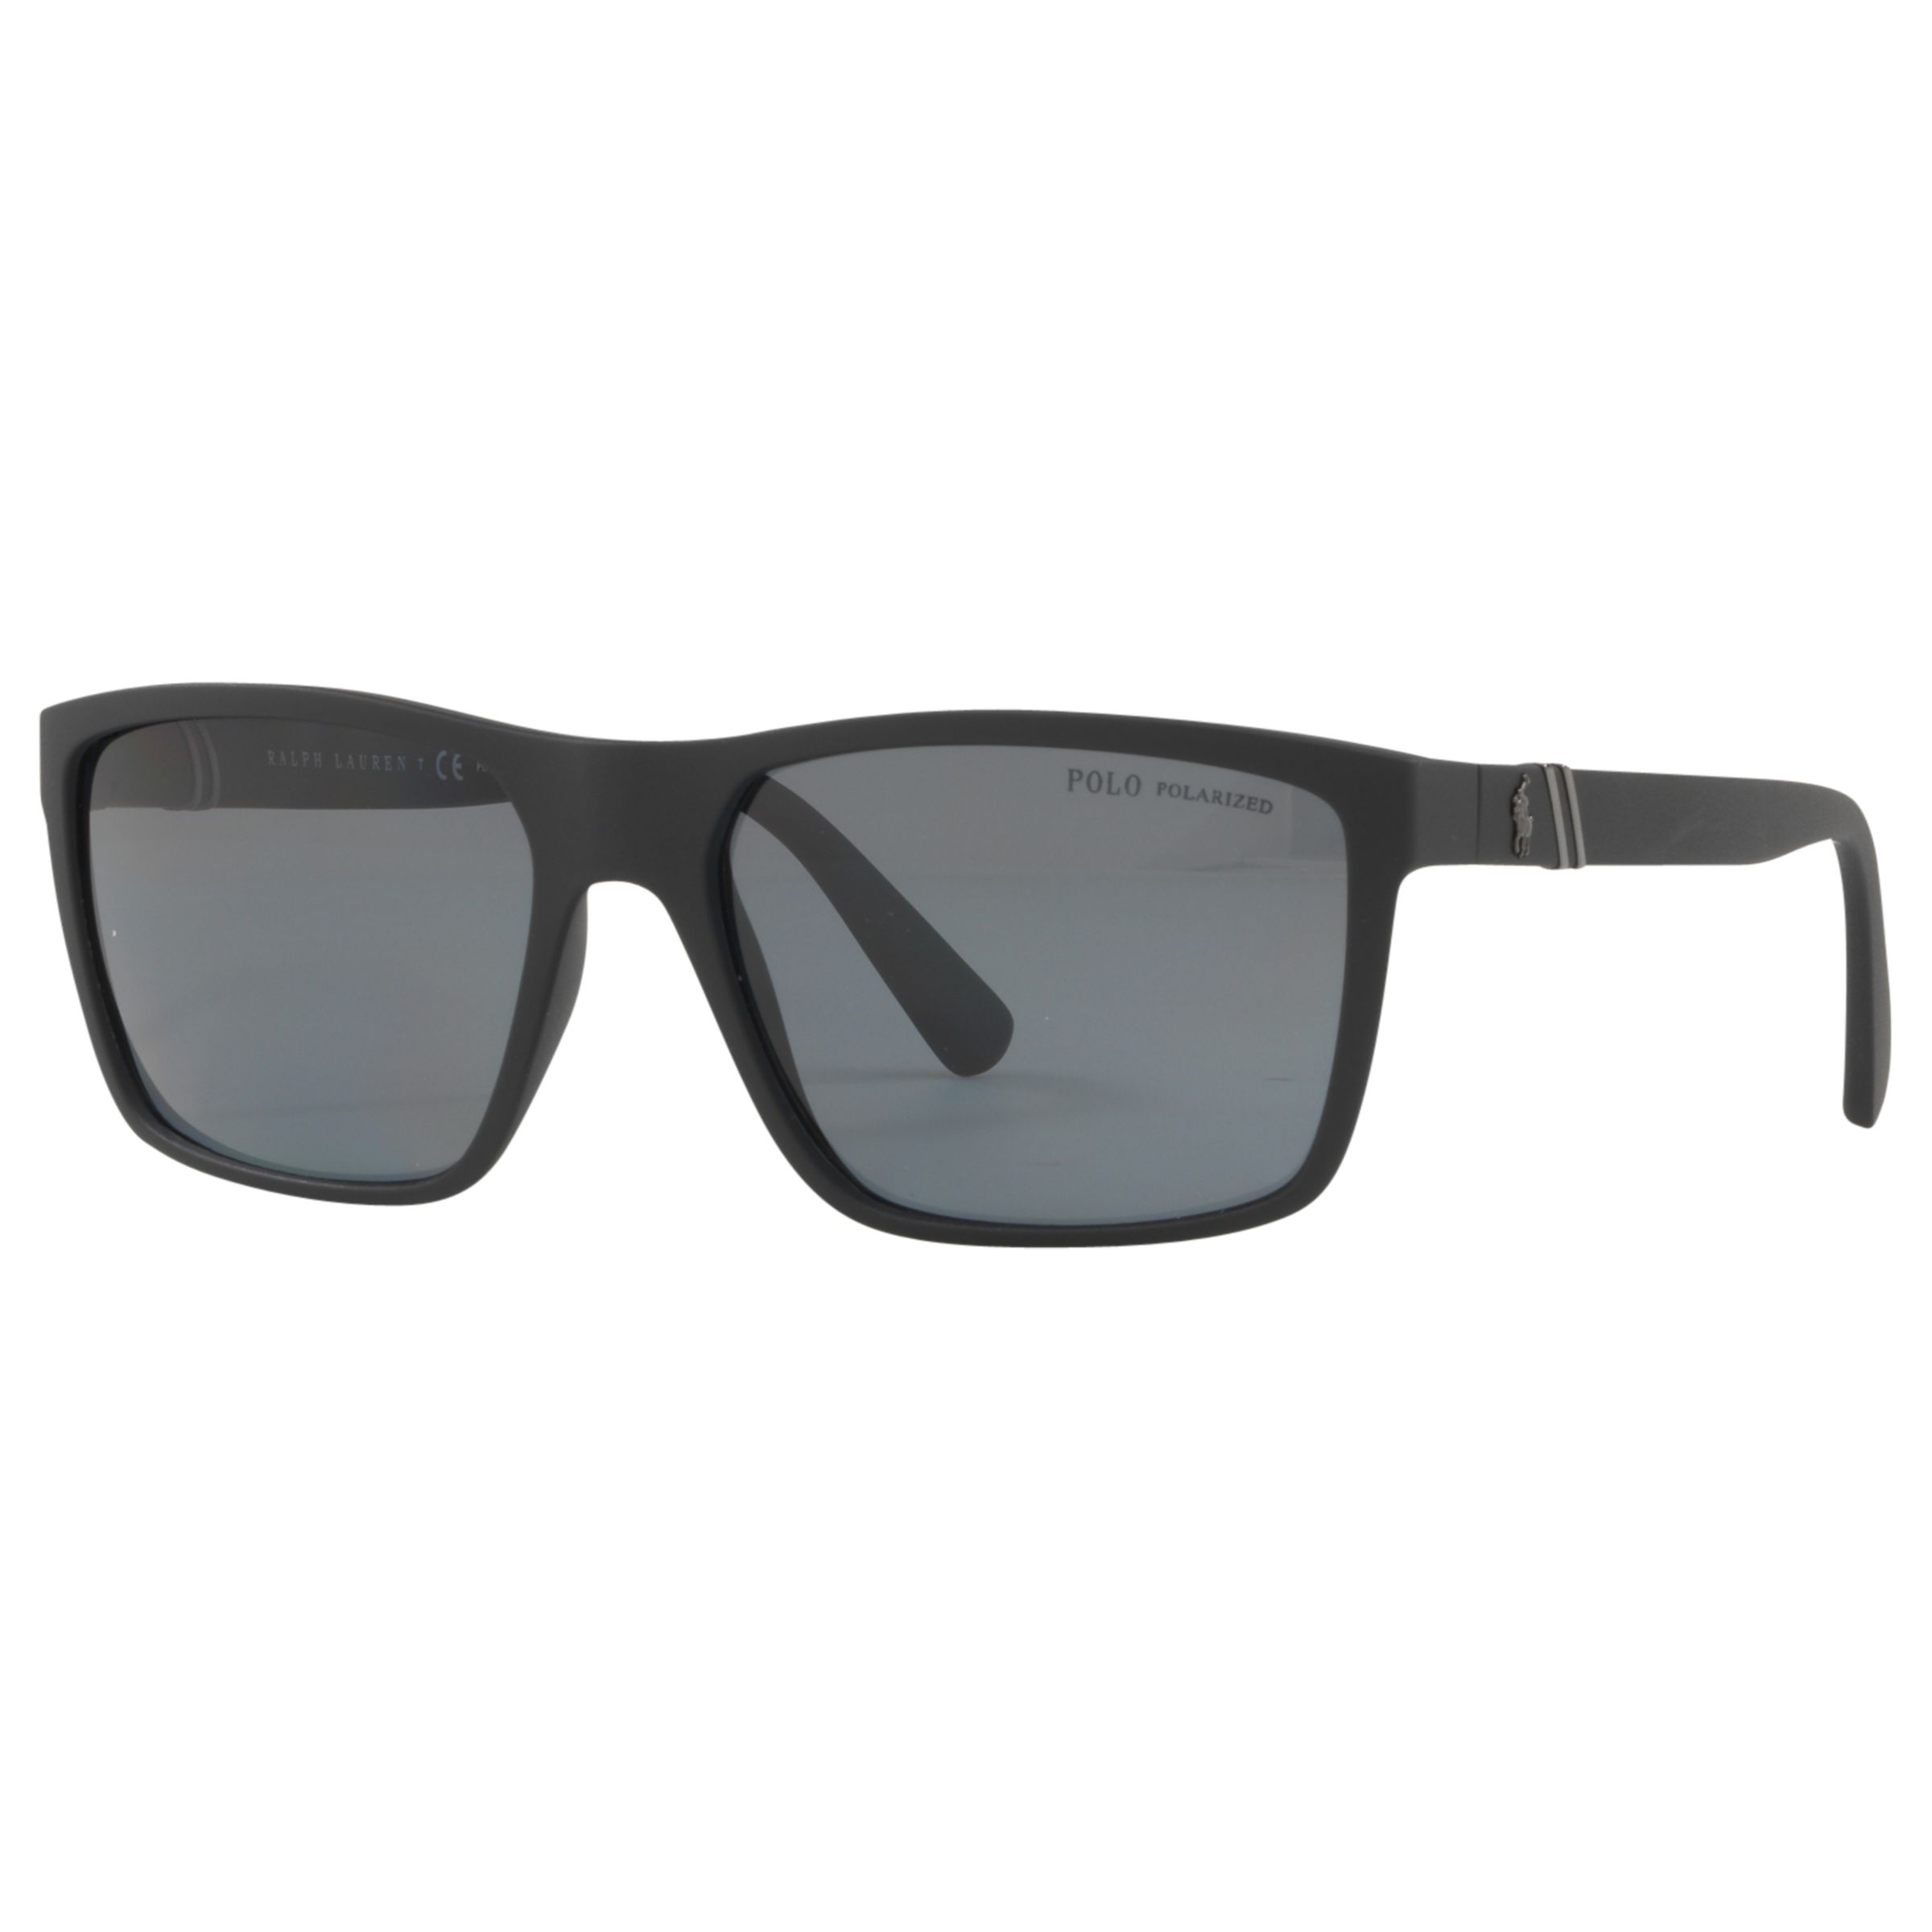 Мужские поляризованные прямоугольные солнцезащитные очки Polo PH4133 Ralph Lauren, черный/серый прямоугольные матовые черные серебряные зеркальные солнцезащитные очки polo ralph lauren черный